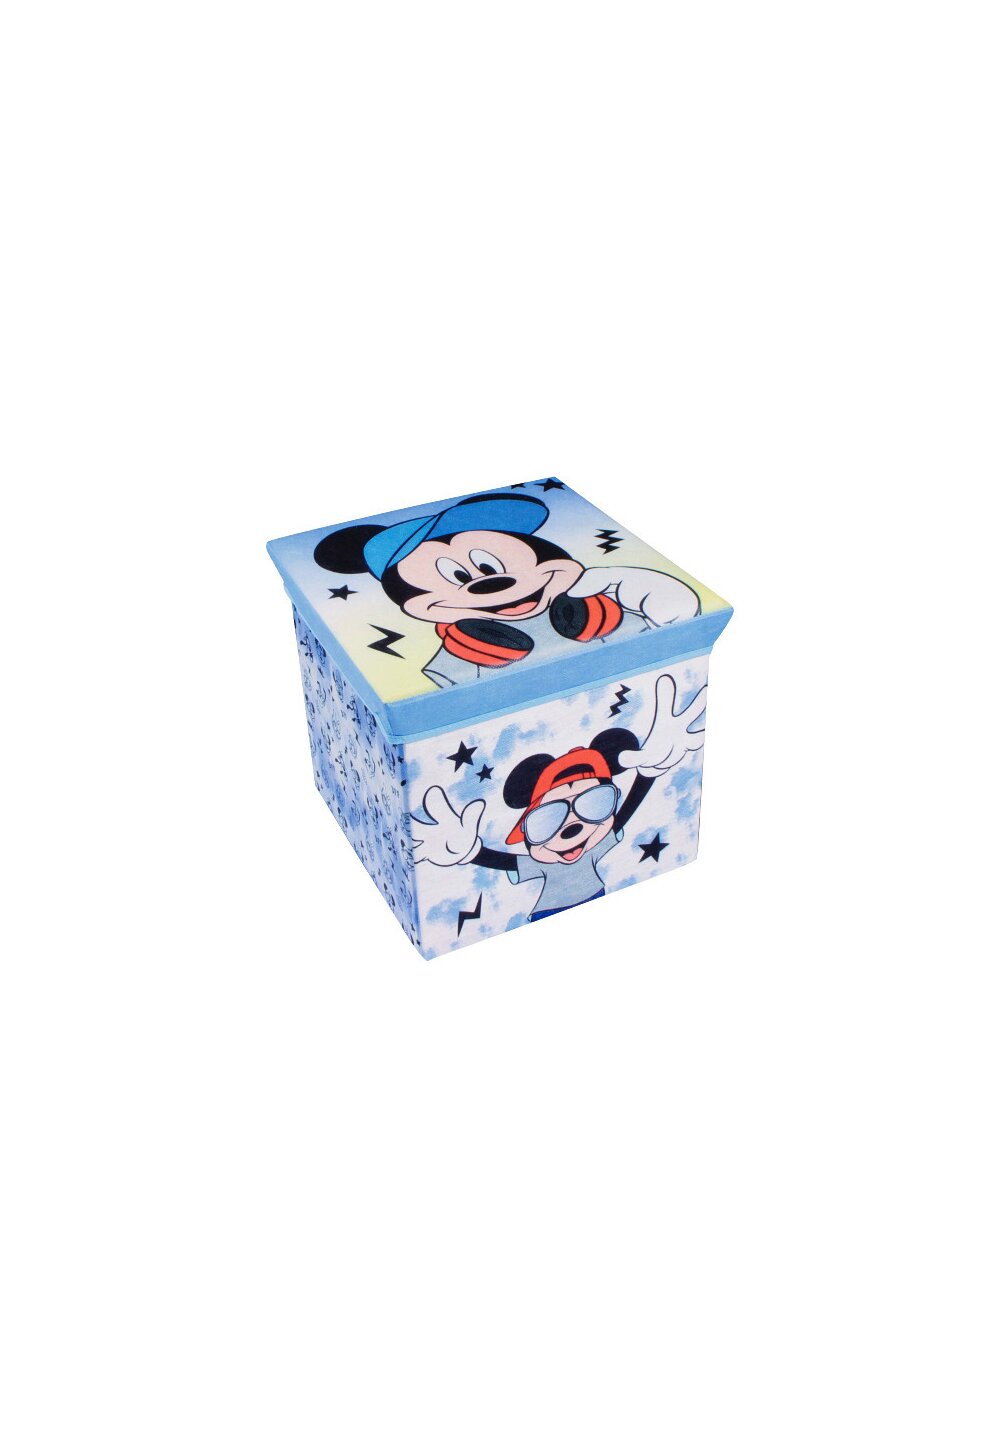 Cutie depozitare, Mickey Mouse, albastra cu stelute DISNEY imagine noua